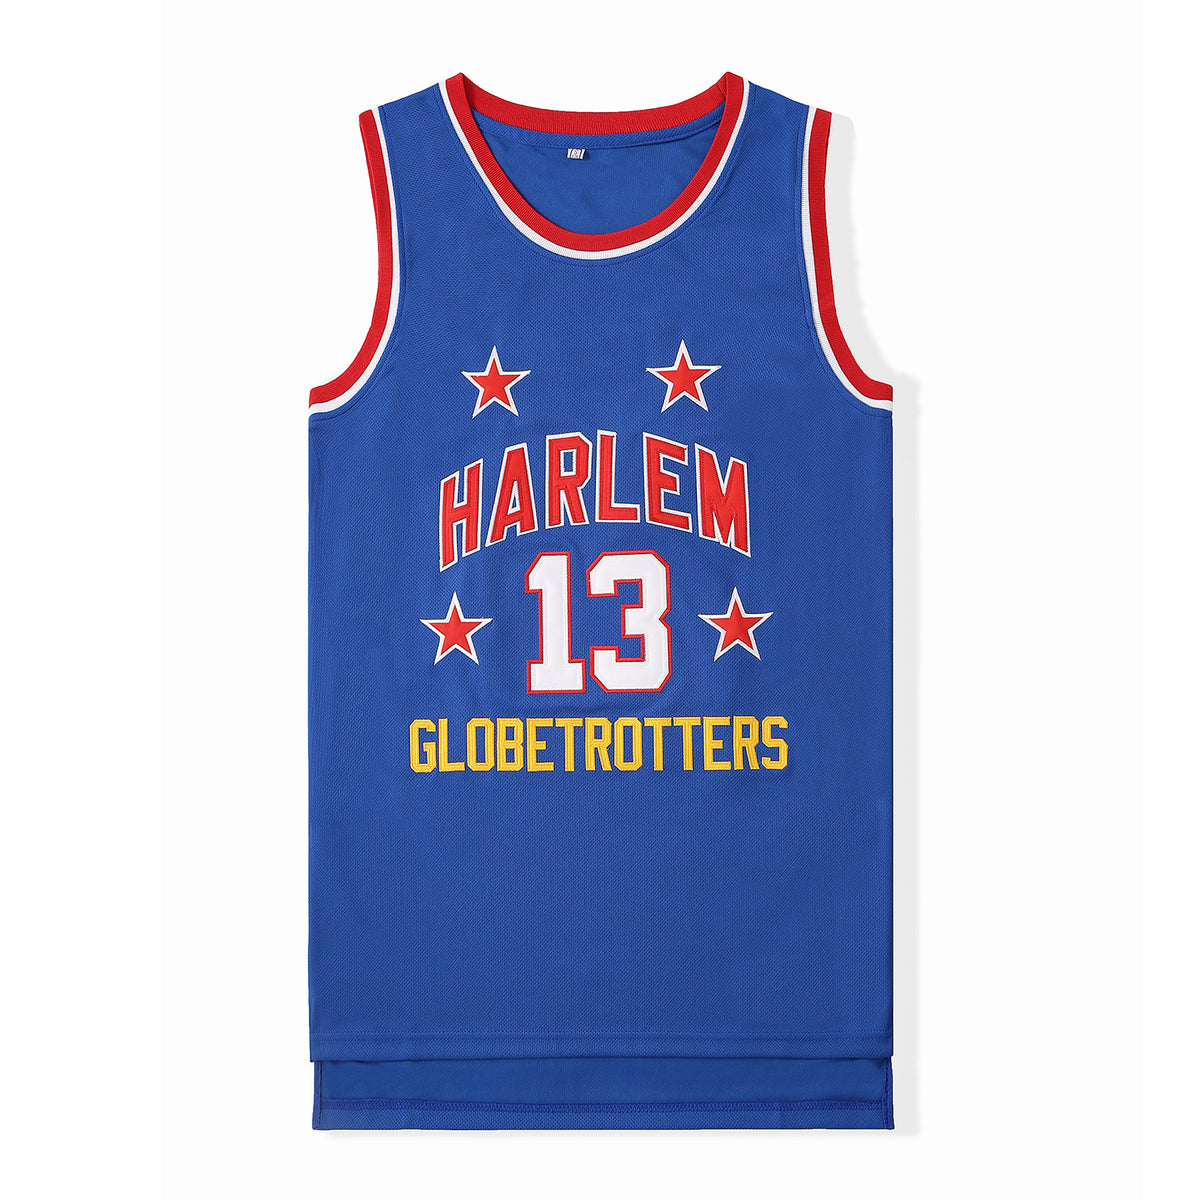 Harlem Globetrotters Jersey 